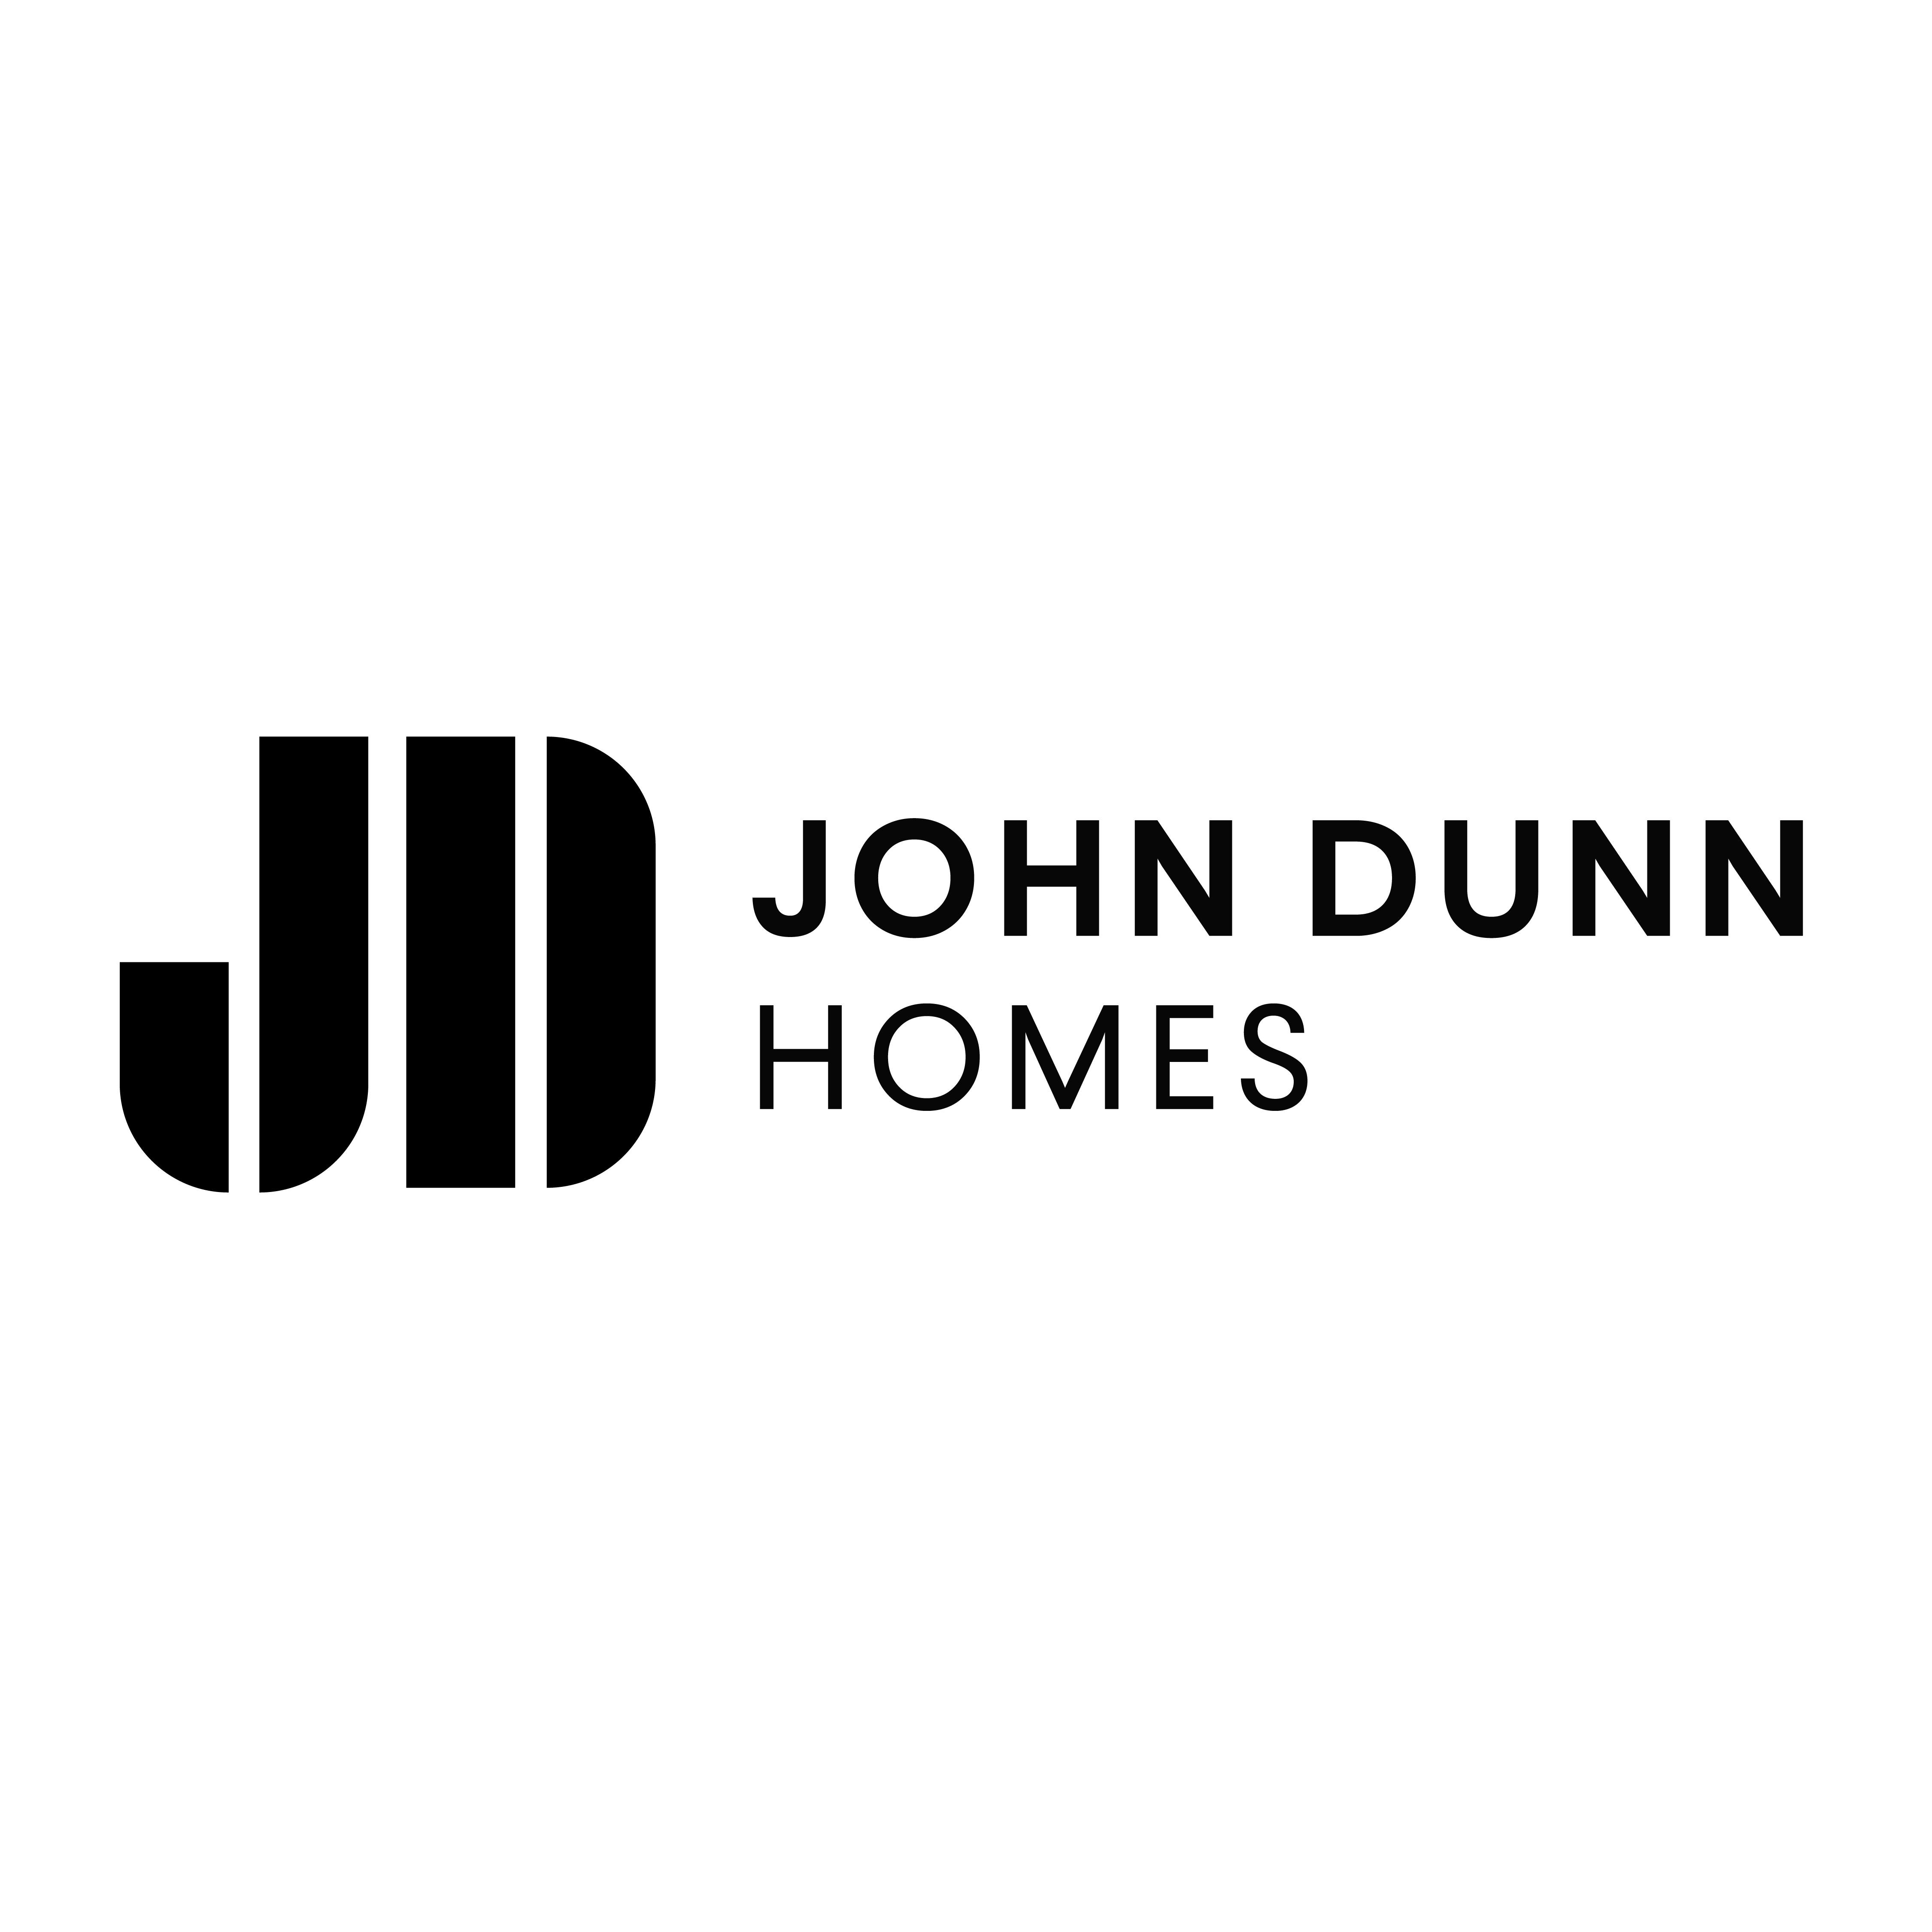 The logo of John Dunn